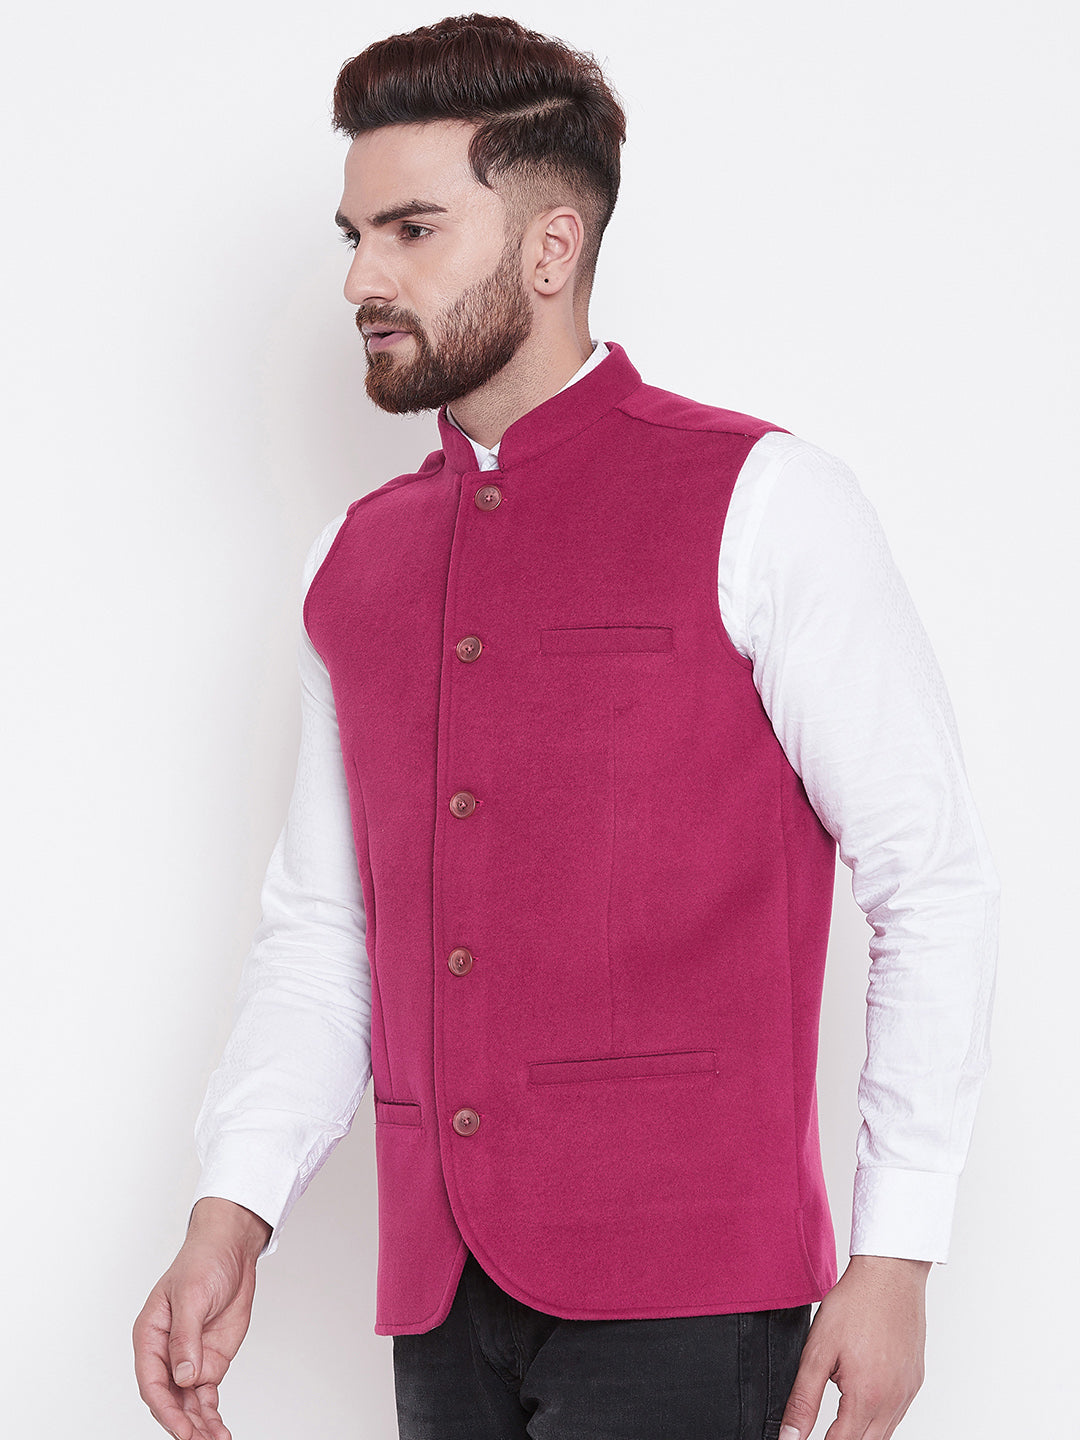 Men's Pink Blended Wool Nehru Jacket - Even Apparels